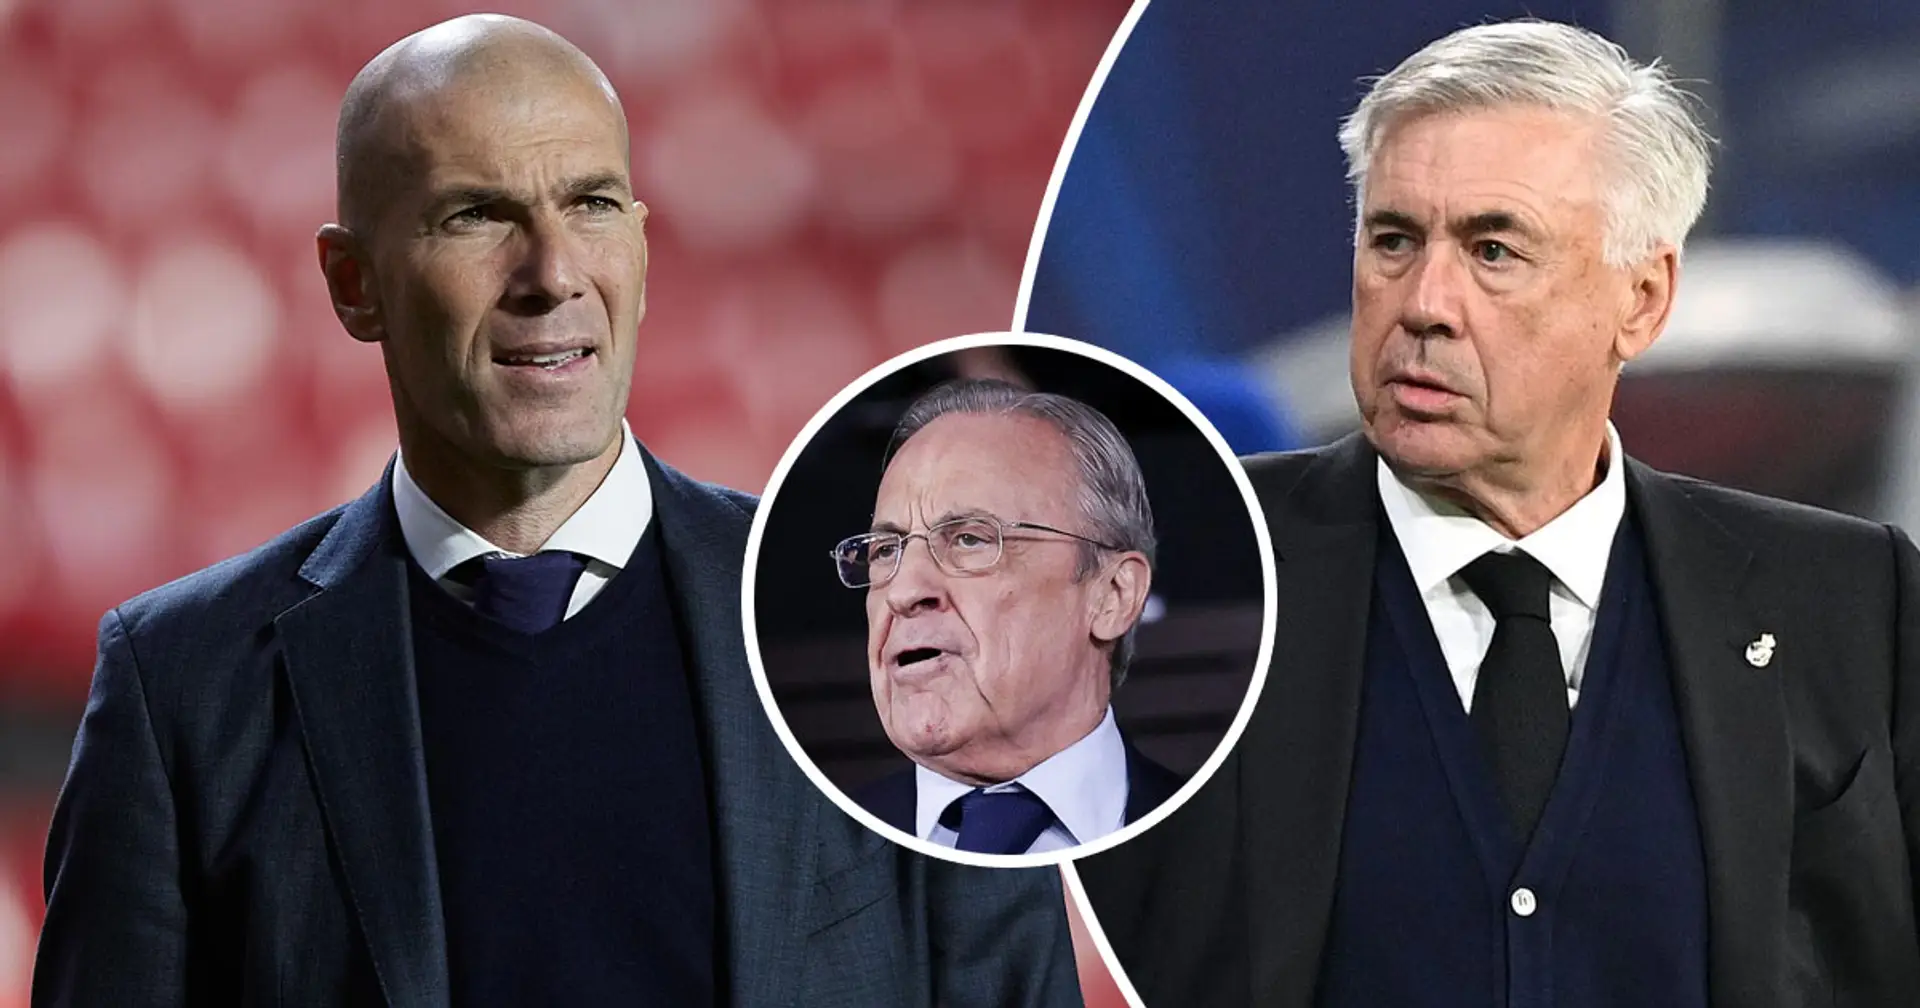 El Real Madrid abre conversaciones con Zidane como posible reemplazo de Ancelotti (fiabilidad: 4 estrellas)